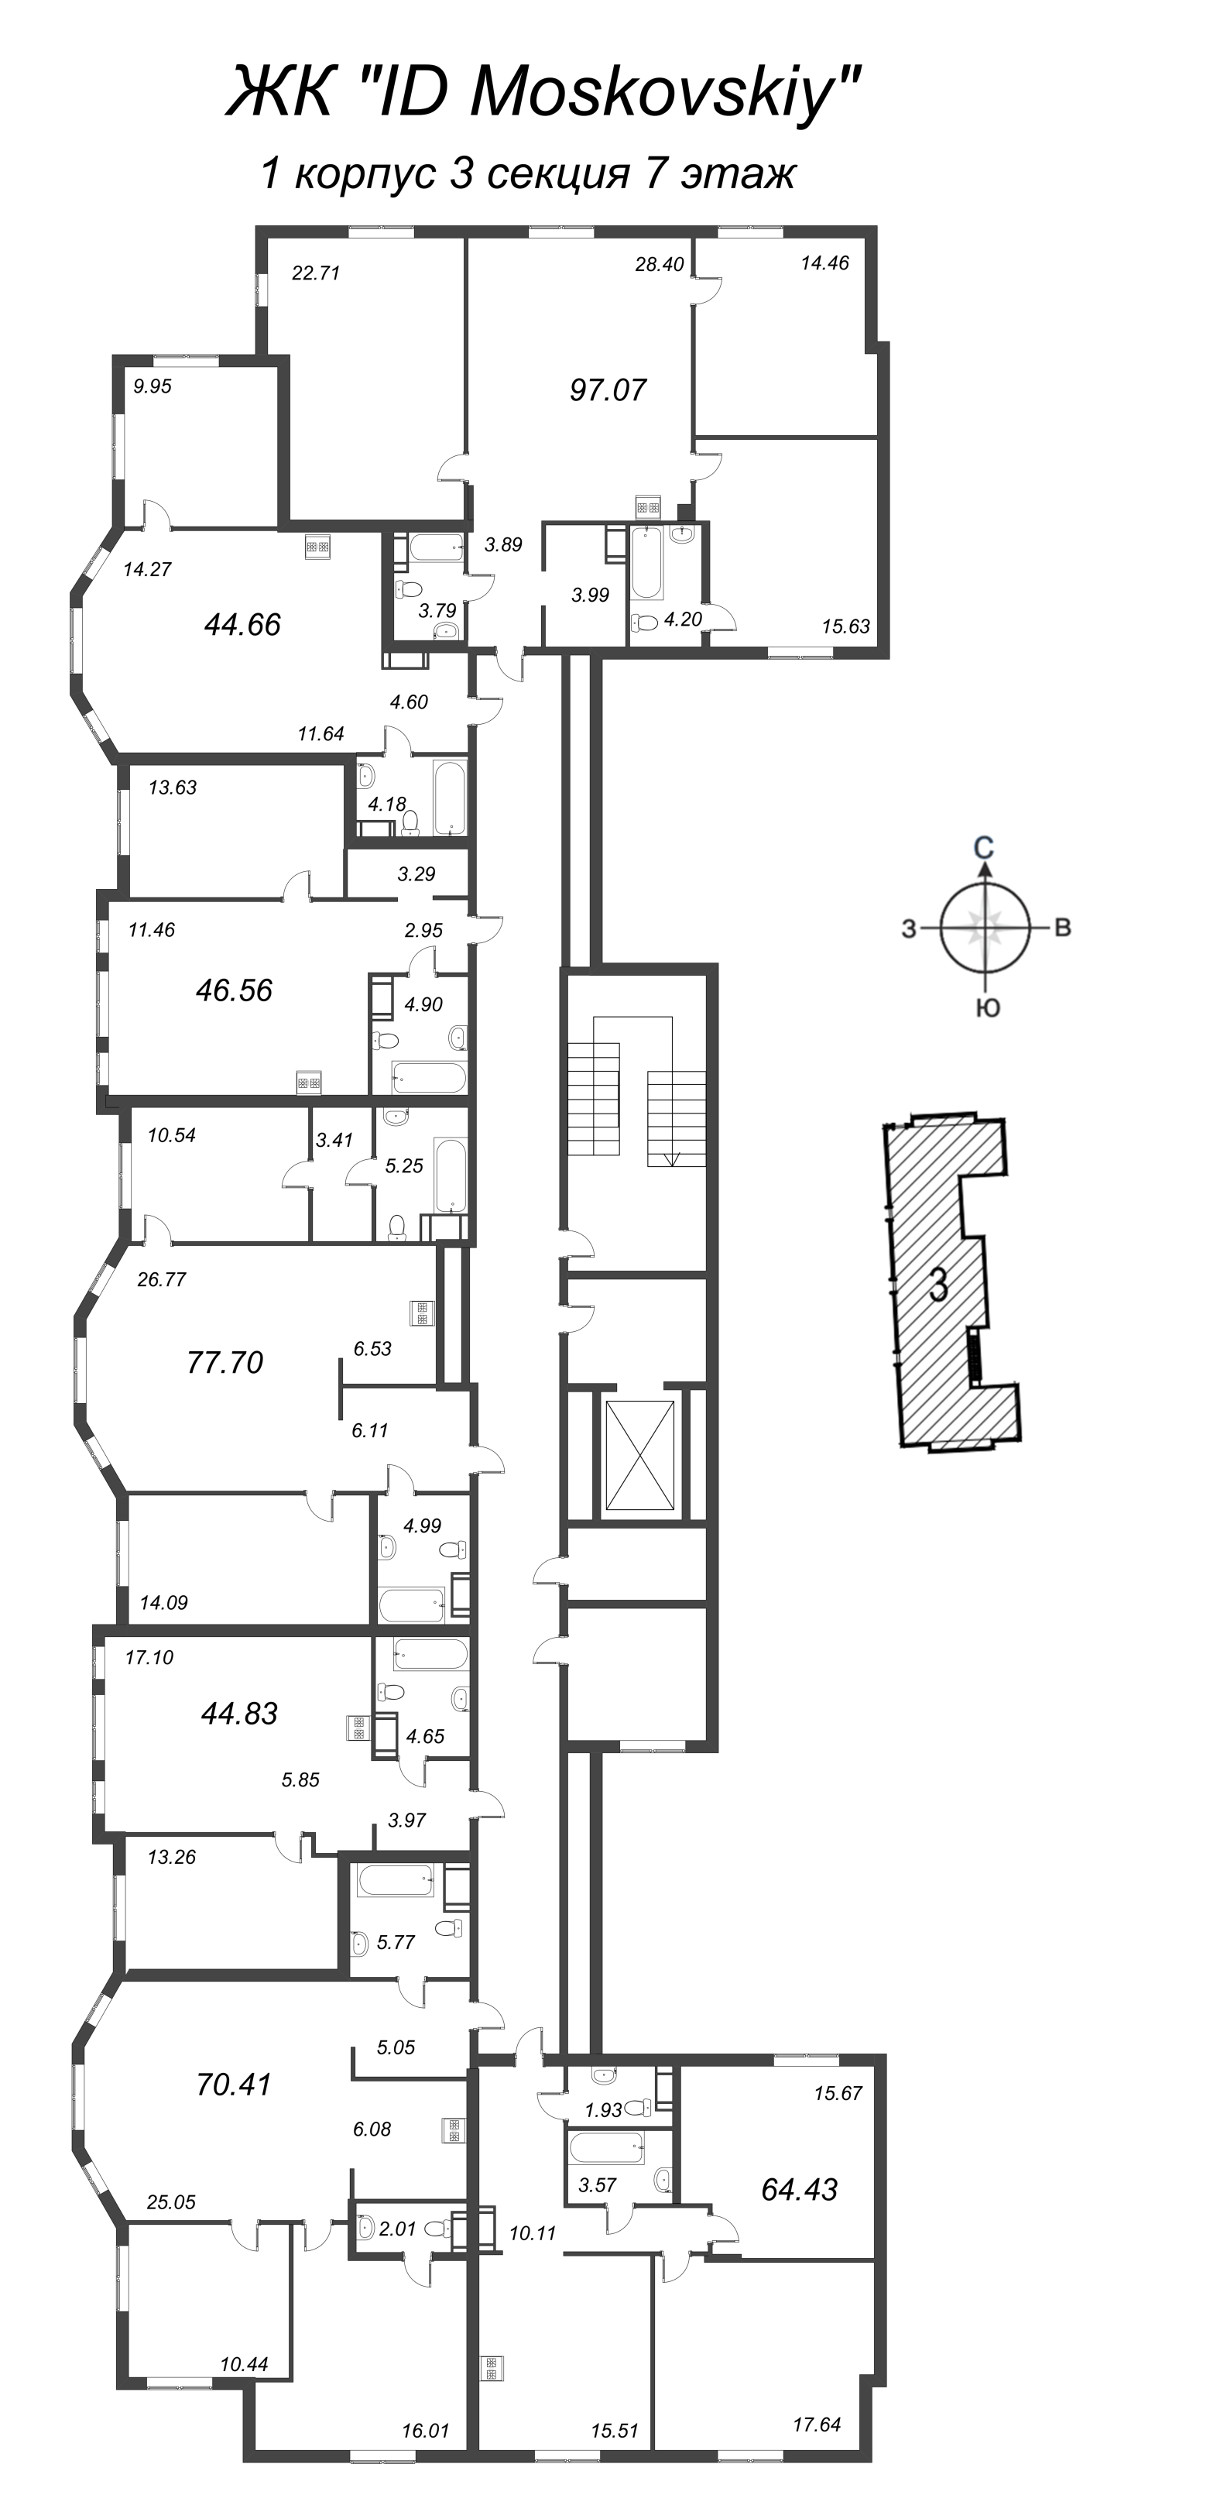 4-комнатная (Евро) квартира, 97.07 м² в ЖК "ID Moskovskiy" - планировка этажа